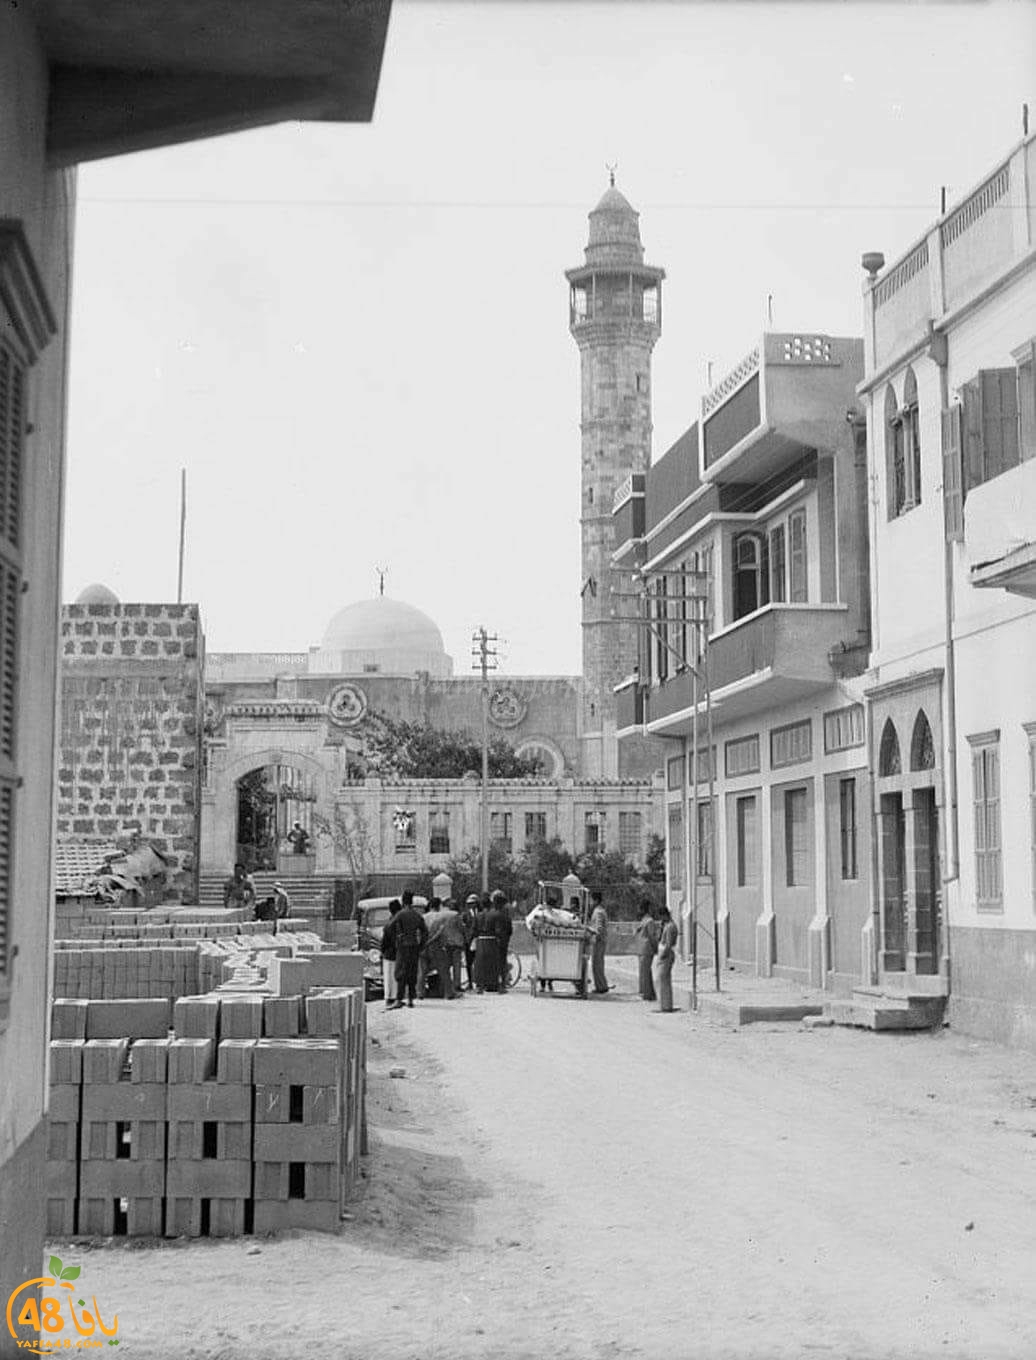  صورة نادرة لمسجد حسن بك وحي المنشية بيافا تعود لعام 1945